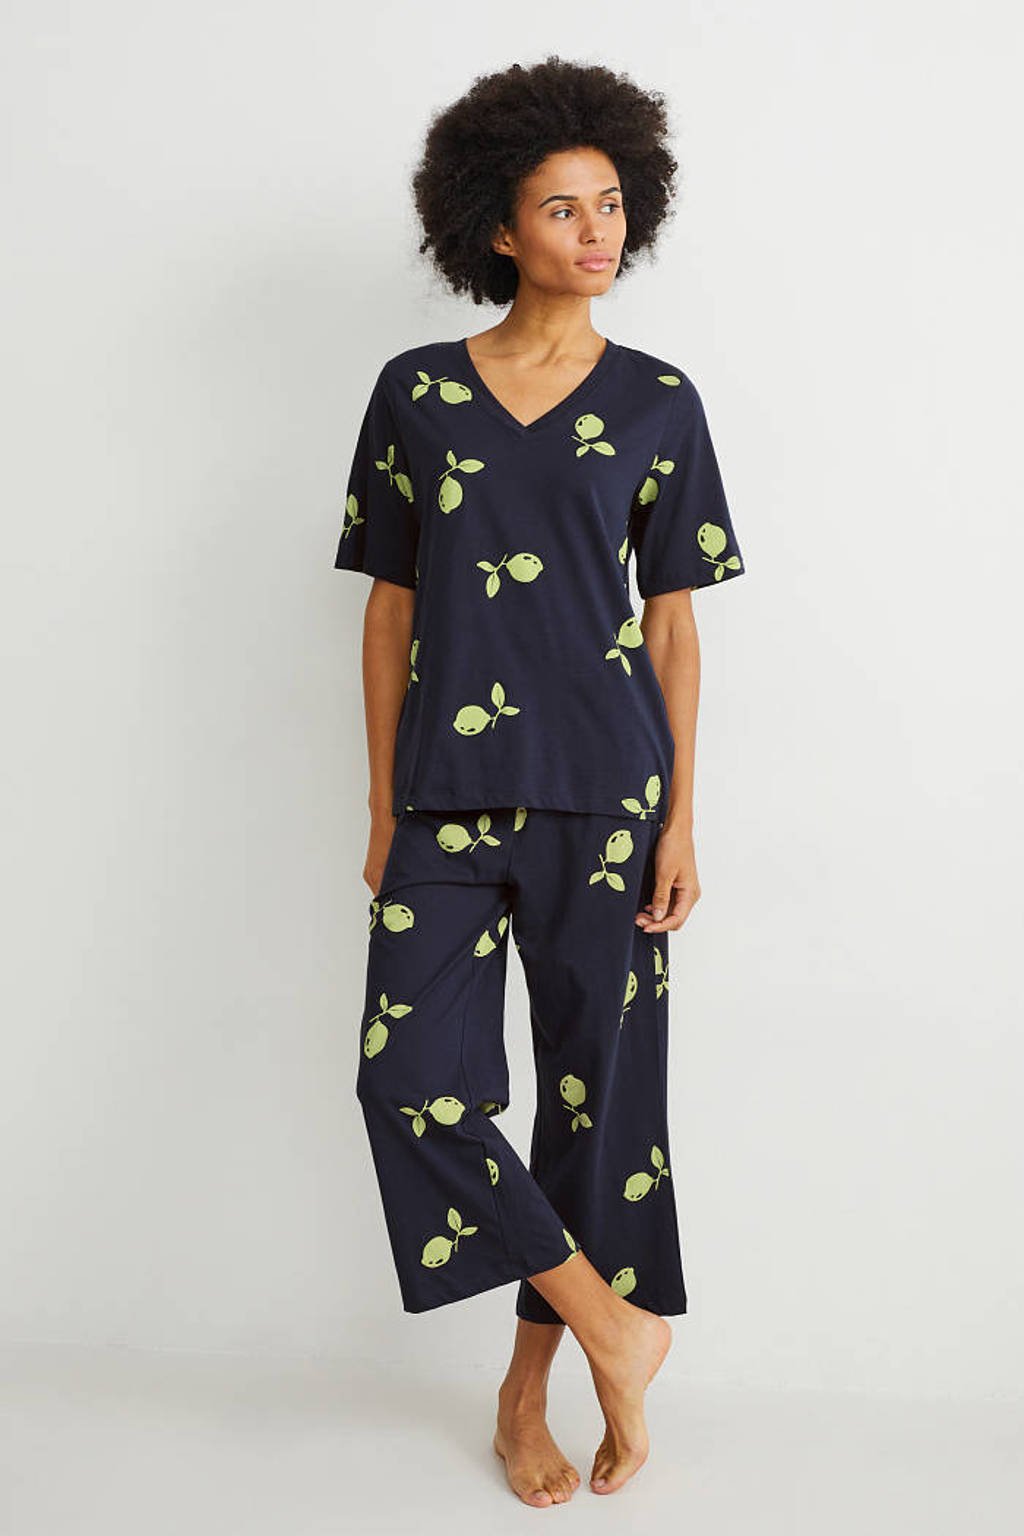 Verdeelstuk tetraëder Emuleren C&A pyjama donkerblauw/geel kopen? | Morgen in huis | wehkamp